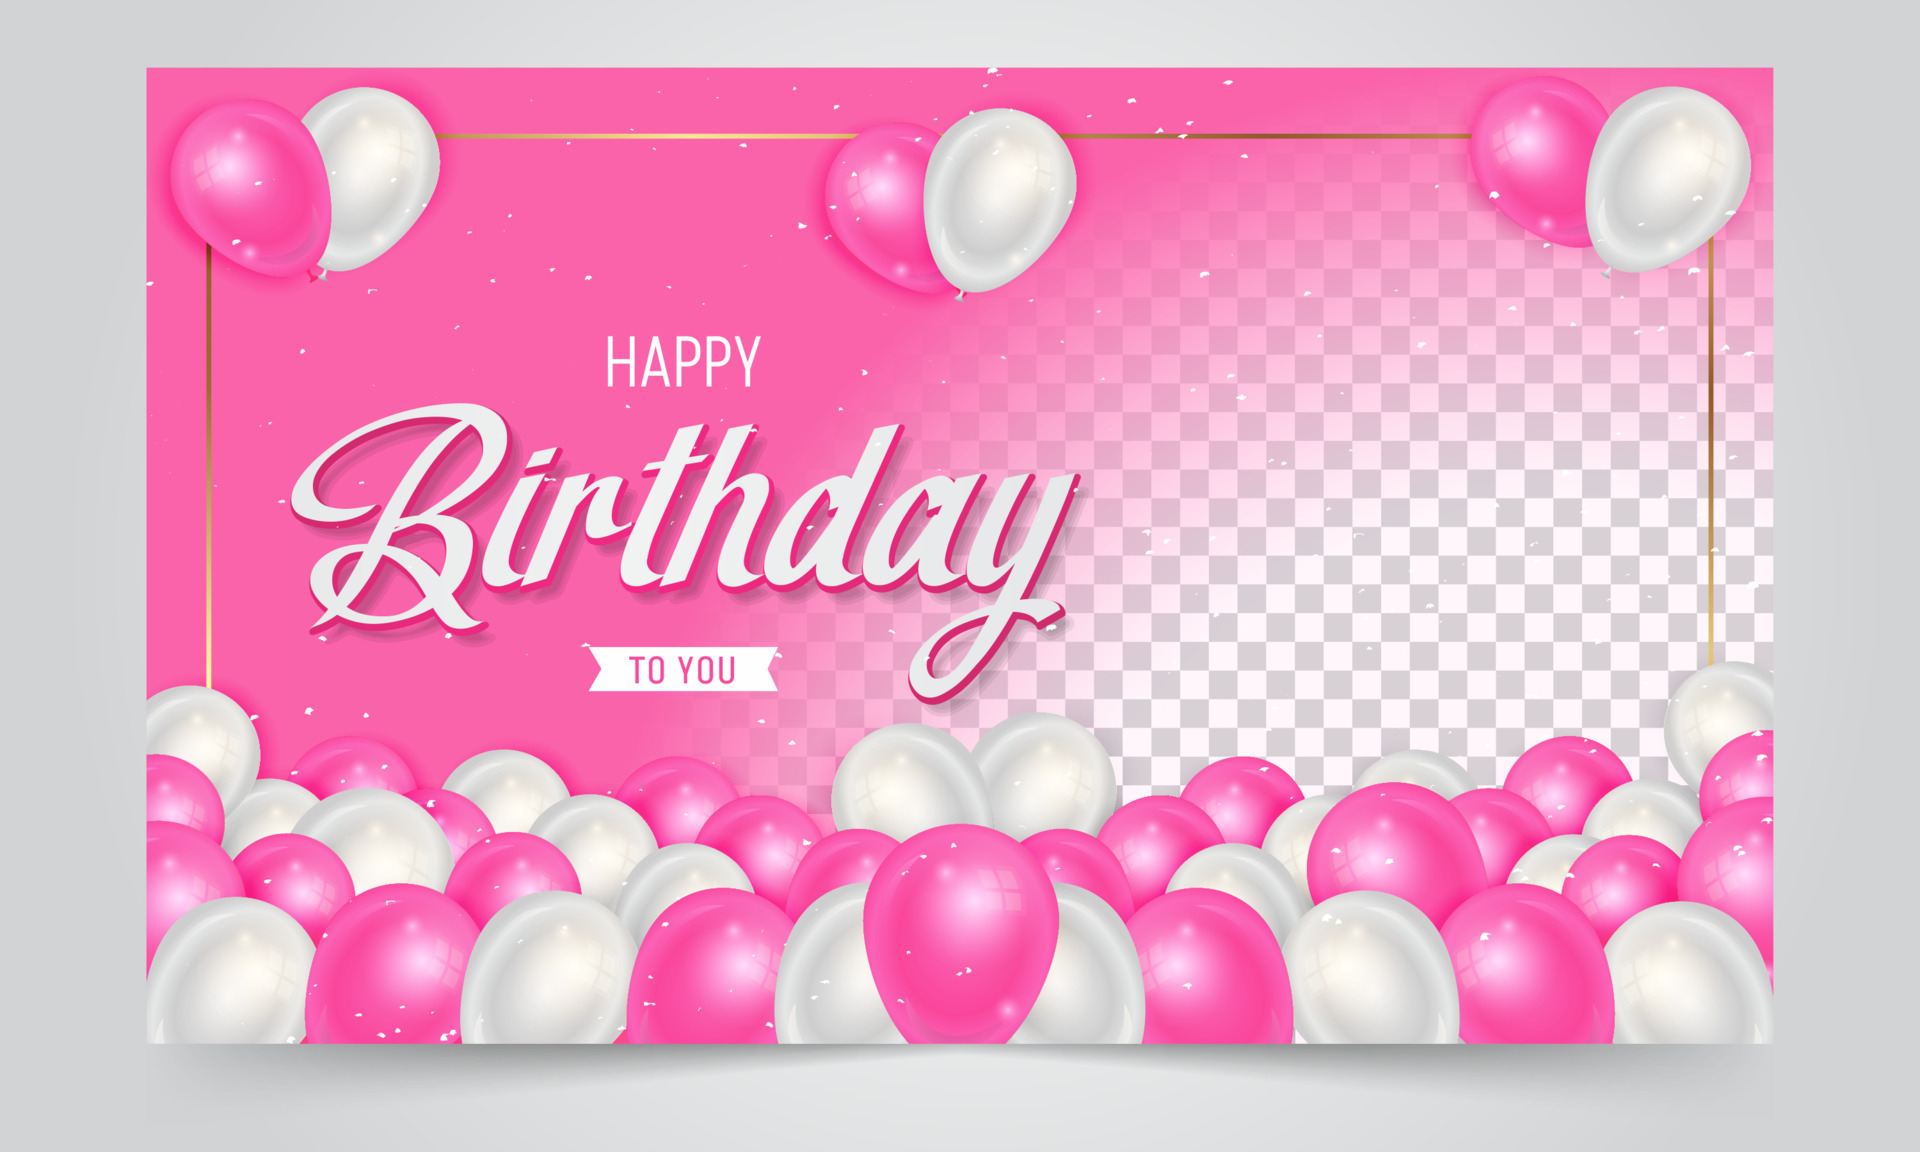 Với bộ sưu tập nền đồ họa sinh nhật hồng miễn phí, bạn có thể biến bữa tiệc sinh nhật của mình thành một đại tiệc thịnh soạn. Bộ sưu tập này bao gồm các biểu tượng, hình vẽ và đồ họa theo chủ đề sinh nhật hồng rực rỡ, sẽ giúp không gian trở nên sống động và ấm áp hơn.